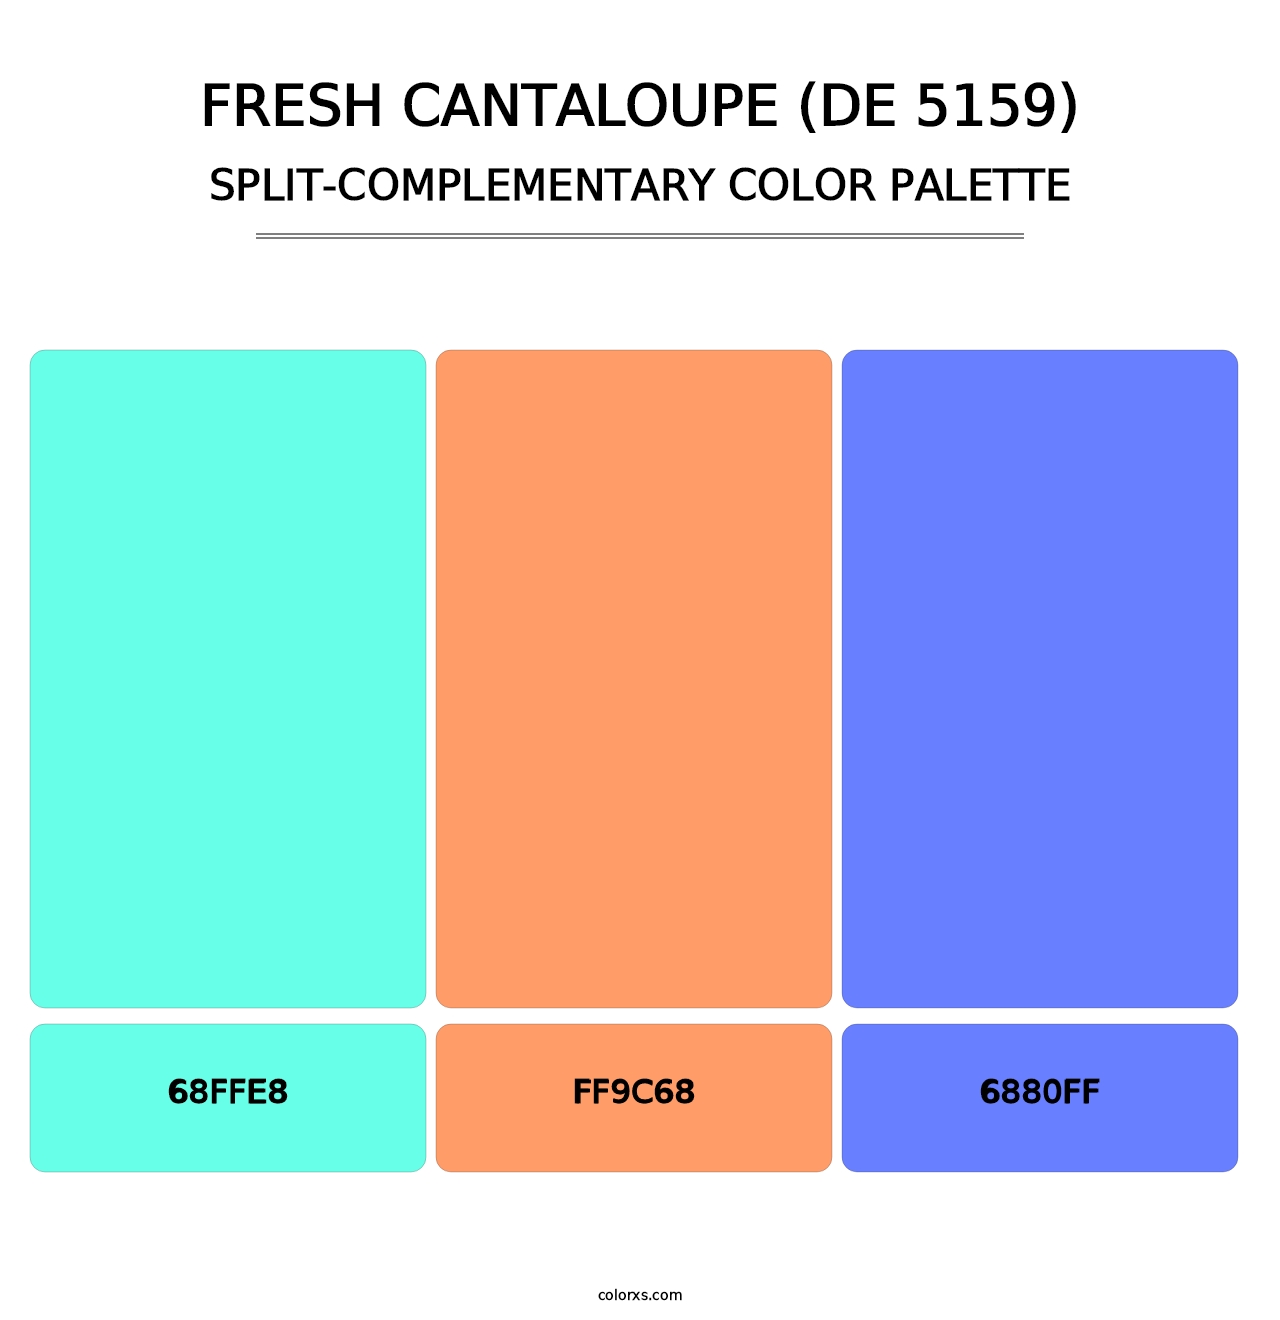 Fresh Cantaloupe (DE 5159) - Split-Complementary Color Palette